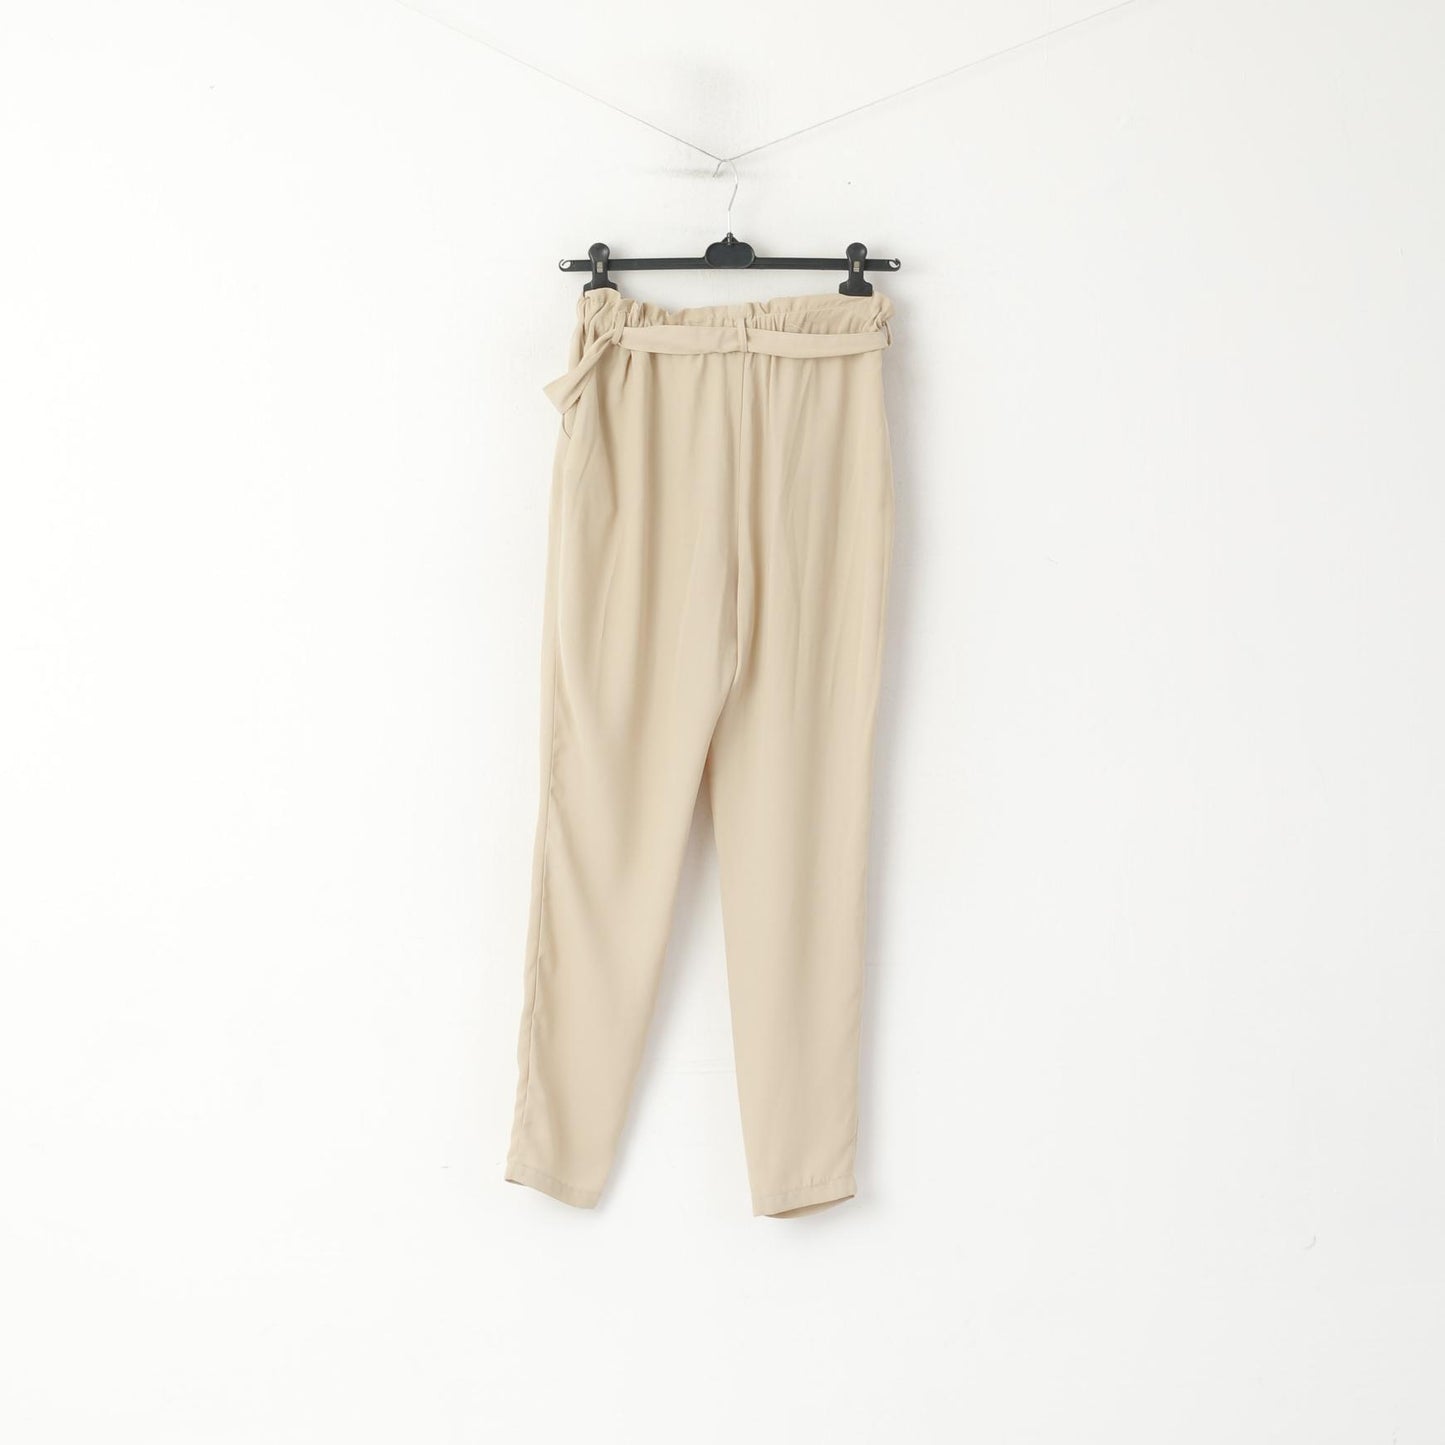 Bik Bok Femme M Pantalon Beige Brillant Taille Haute Ceinture Classique Pantalon Élégant